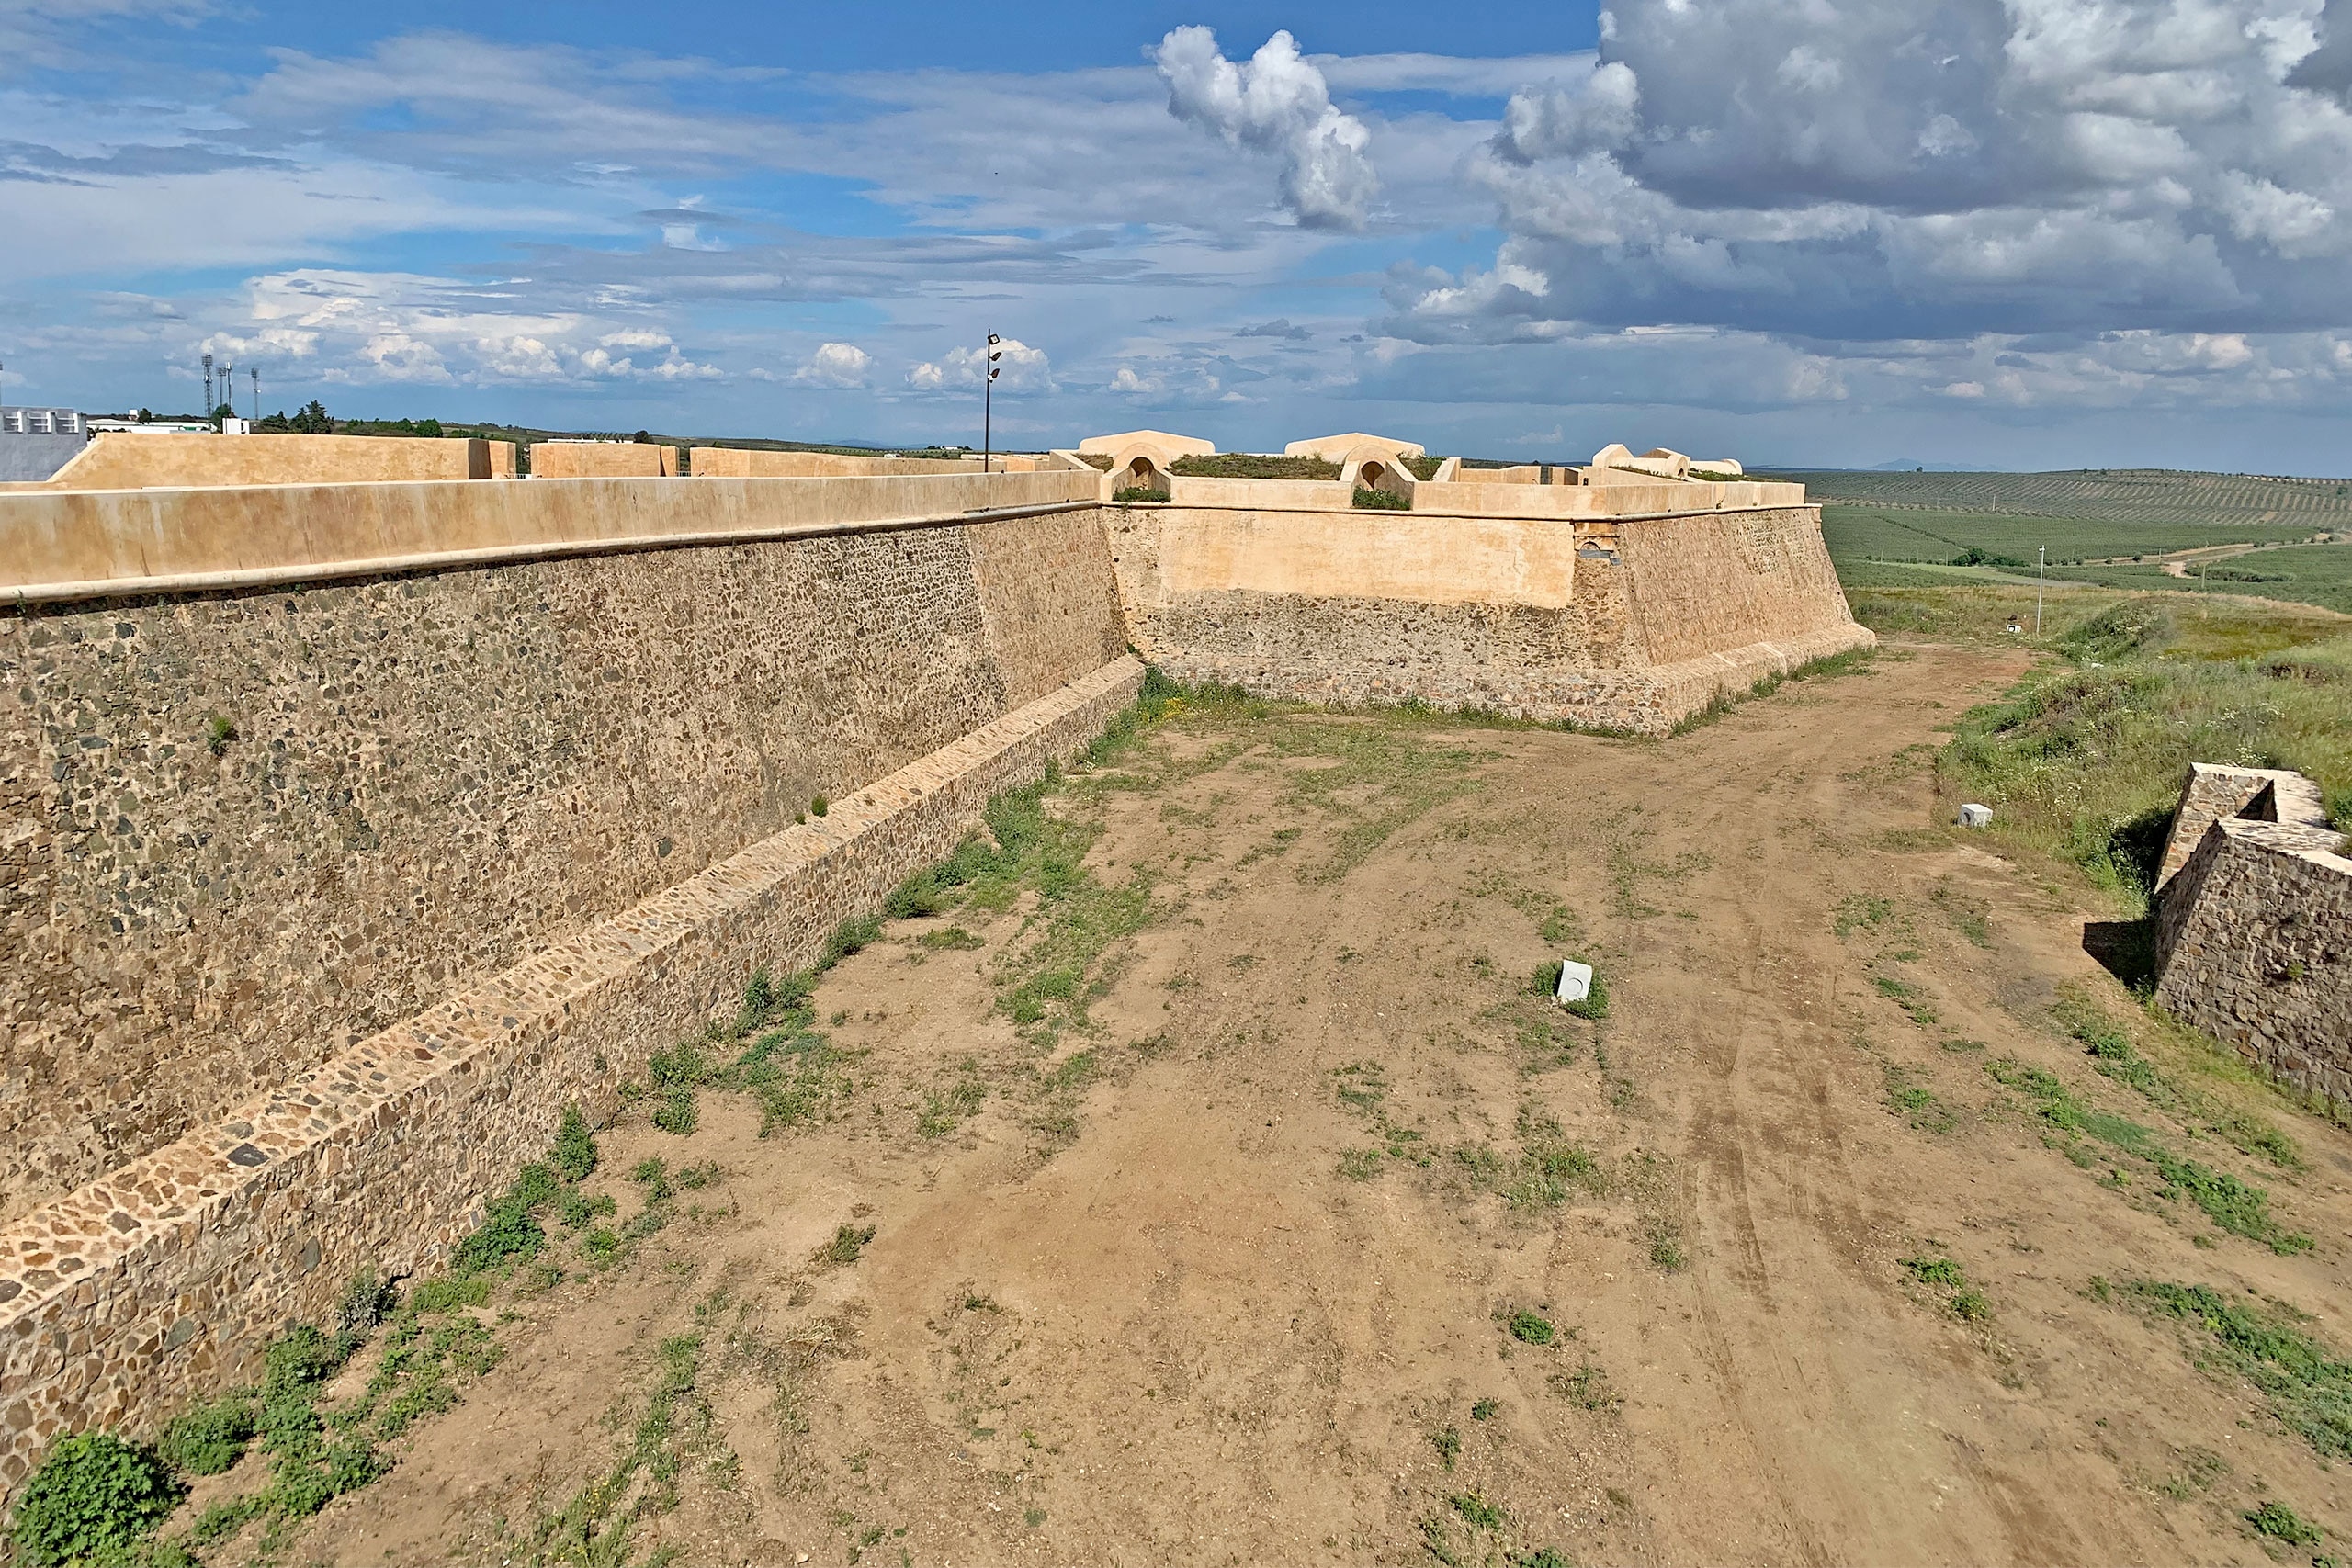  Fortificação de Campo Maior